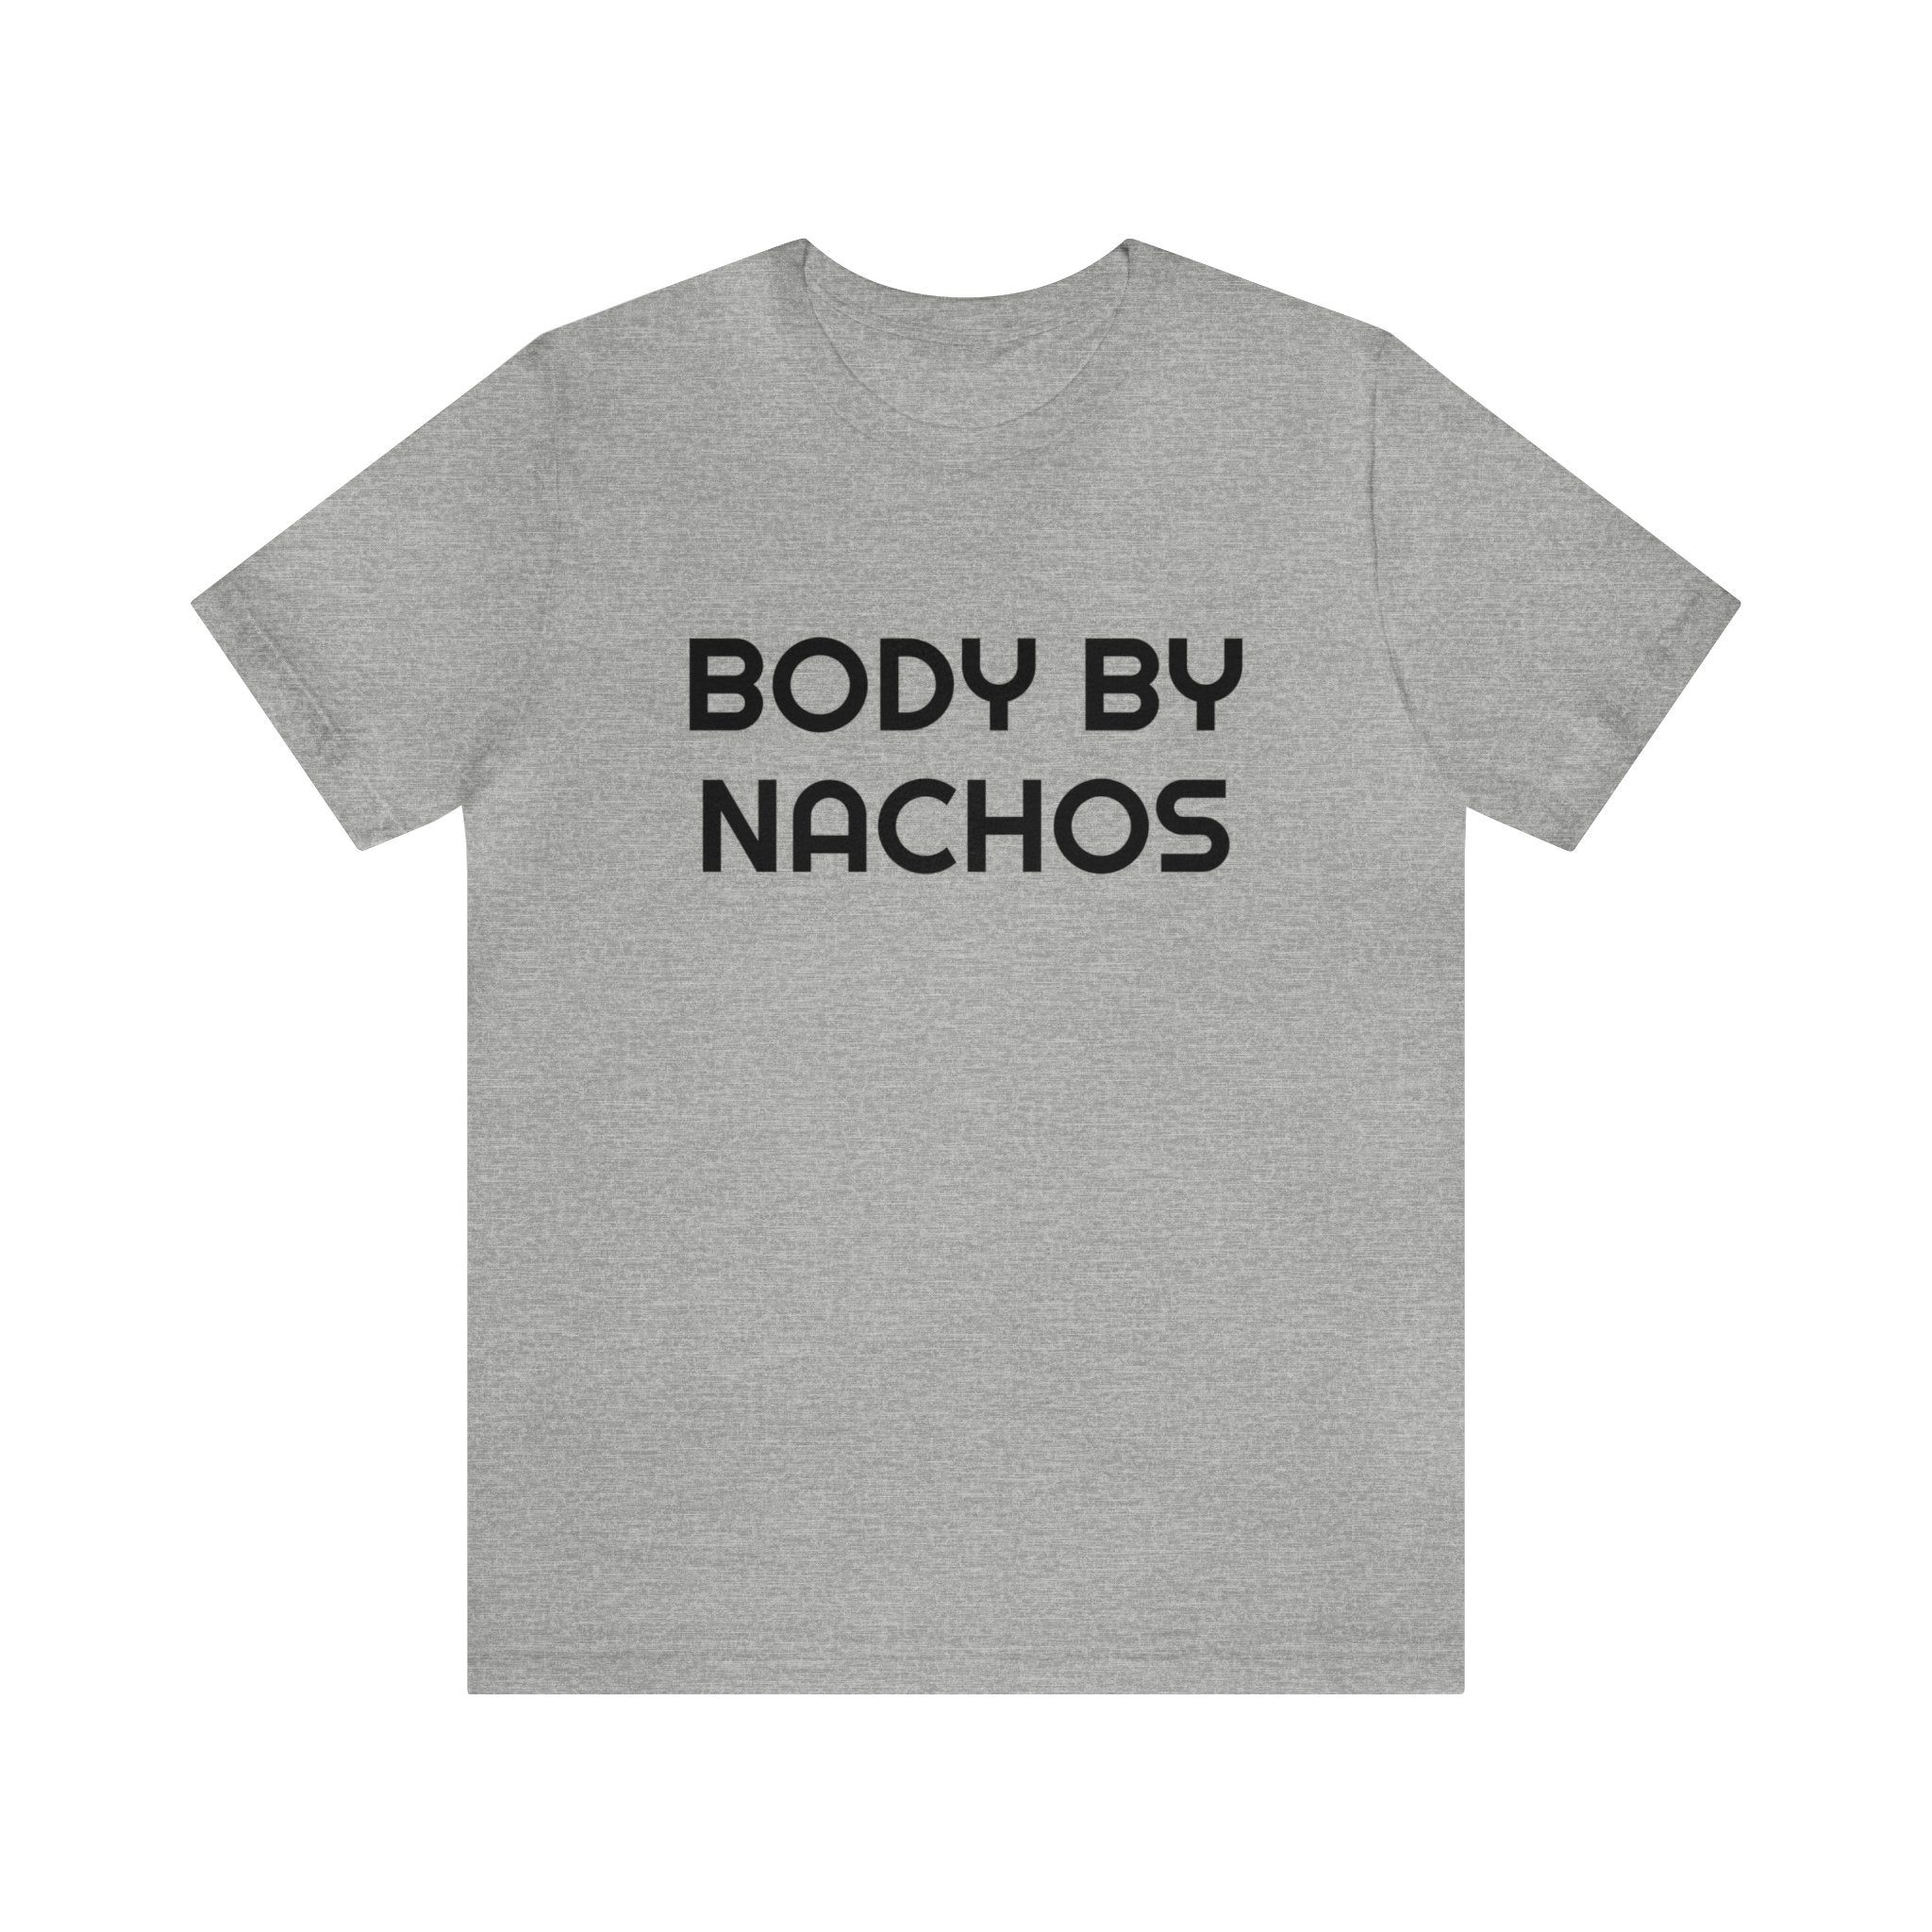 Body by Nachos - unisex shirt